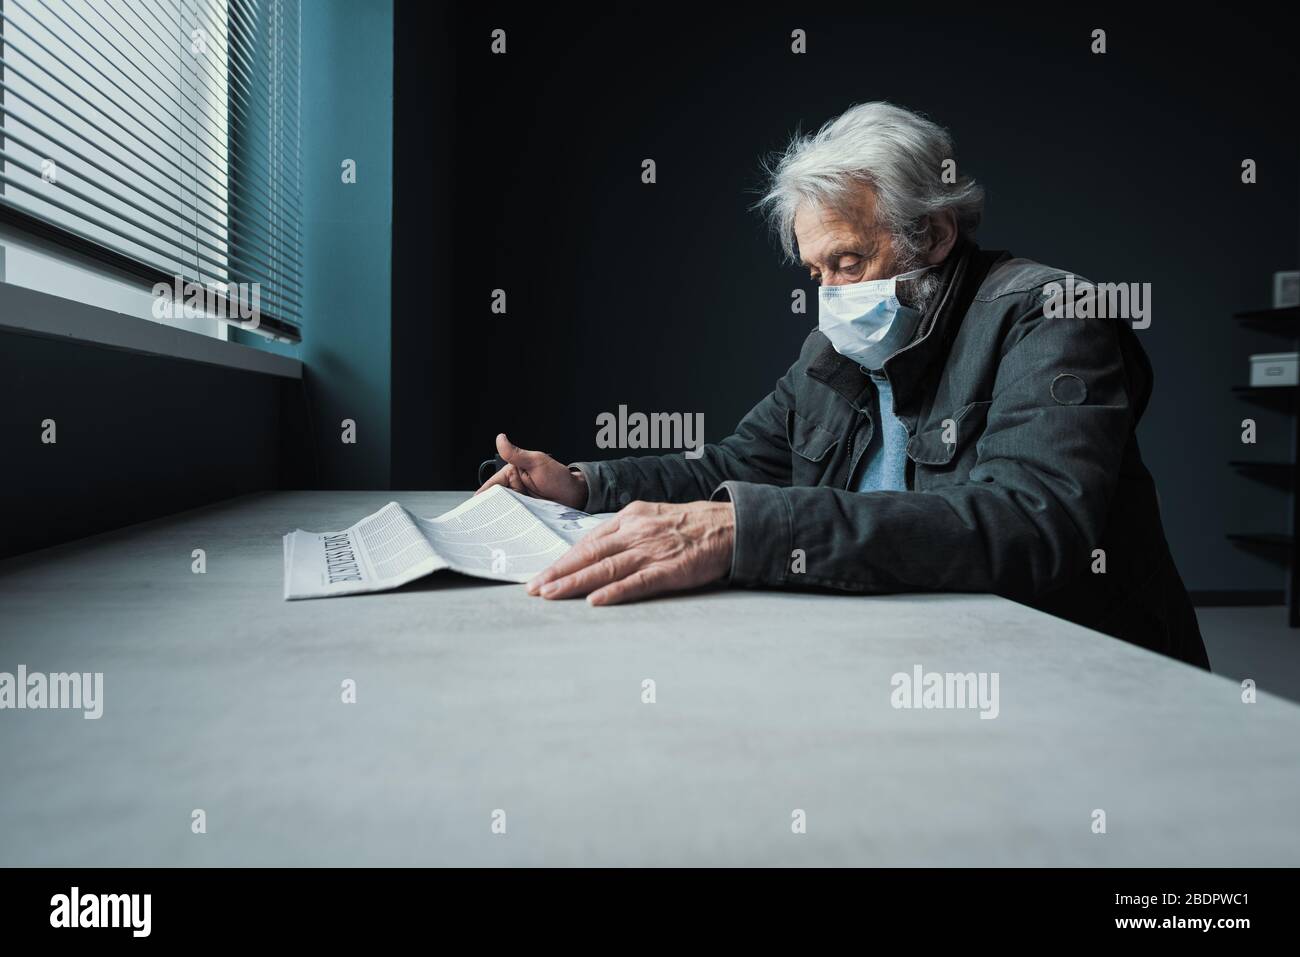 Mis en quarantaine des personnes âgées assis seul à la maison et lisant des informations effrayantes sur le journal concernant le covid-19, il porte un masque chirurgical Banque D'Images